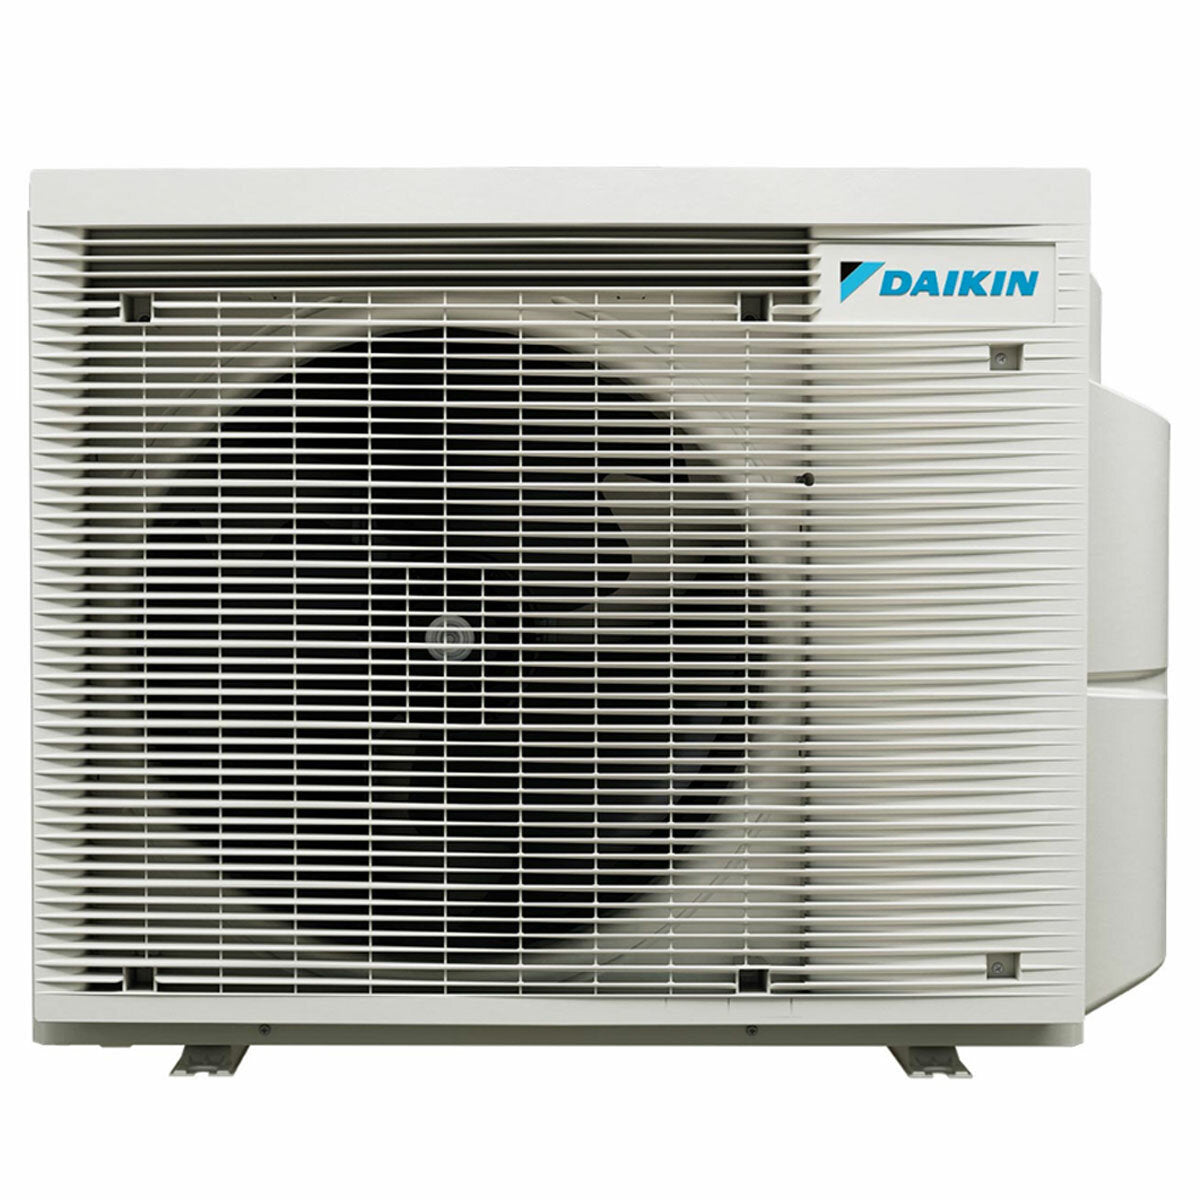 Daikin Stylish White Trial Split-Klimaanlage 7000+7000+15000 BTU Inverter A++ WLAN-Außeneinheit 6,8 kW